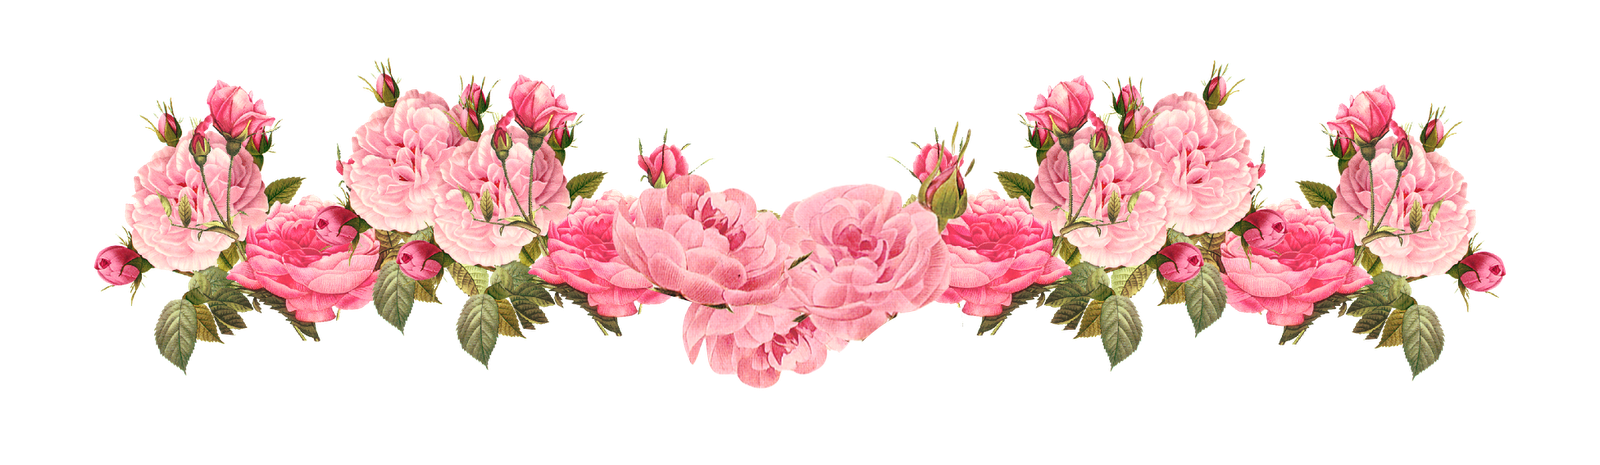 Nét đẹp của hoa hồng màu hồng được tôn vinh với hình thức đẹp mắt nhất thông qua đường viền hoa hồng hồng tươi. Mời bạn đến và chiêm ngưỡng hình ảnh về đường viền hoa hồng này để có những trải nghiệm tuyệt vời nhất về sắc đẹp tự nhiên.